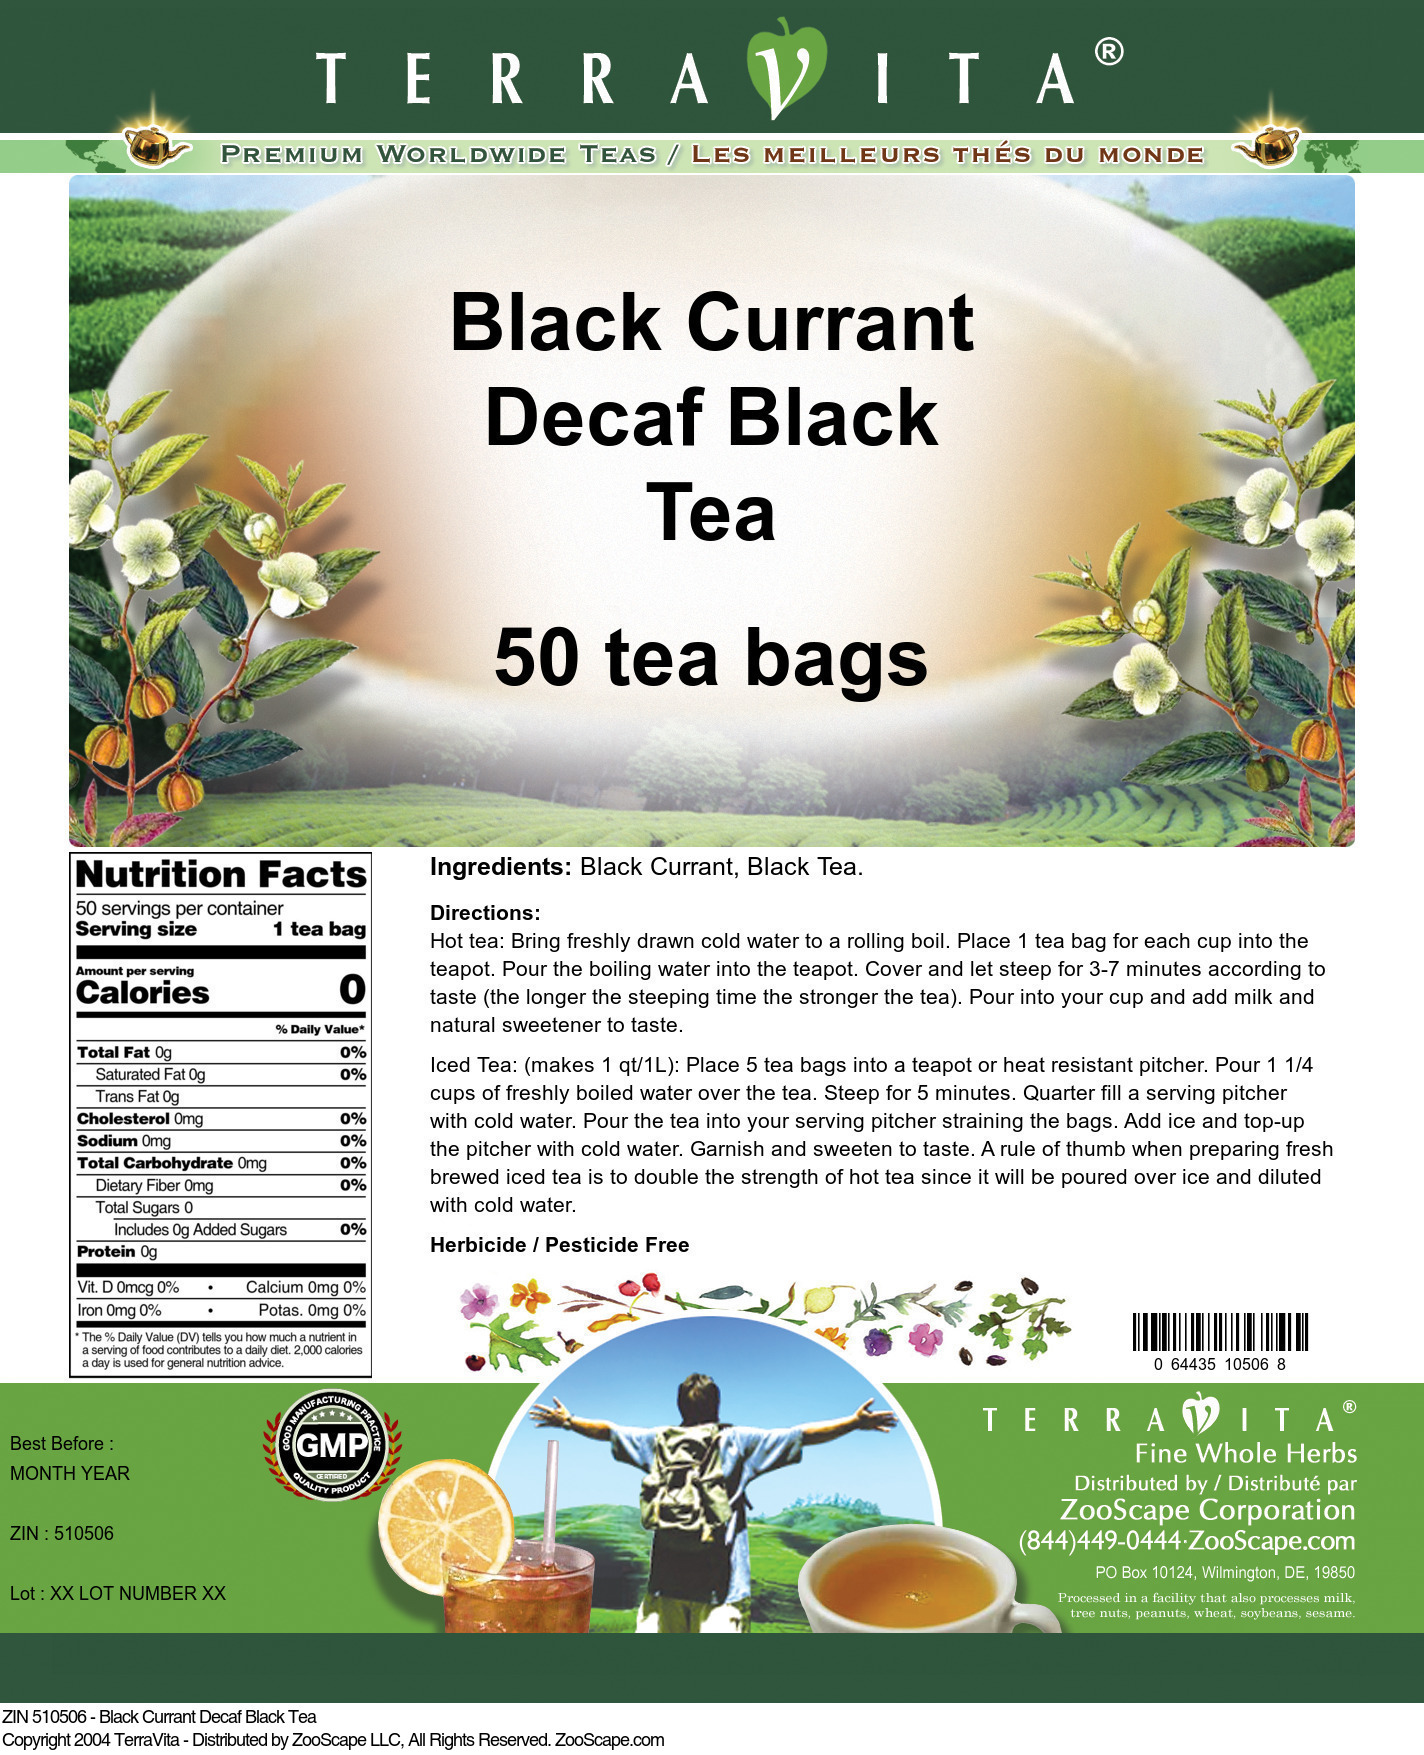 Black Currant Decaf Black Tea - Label